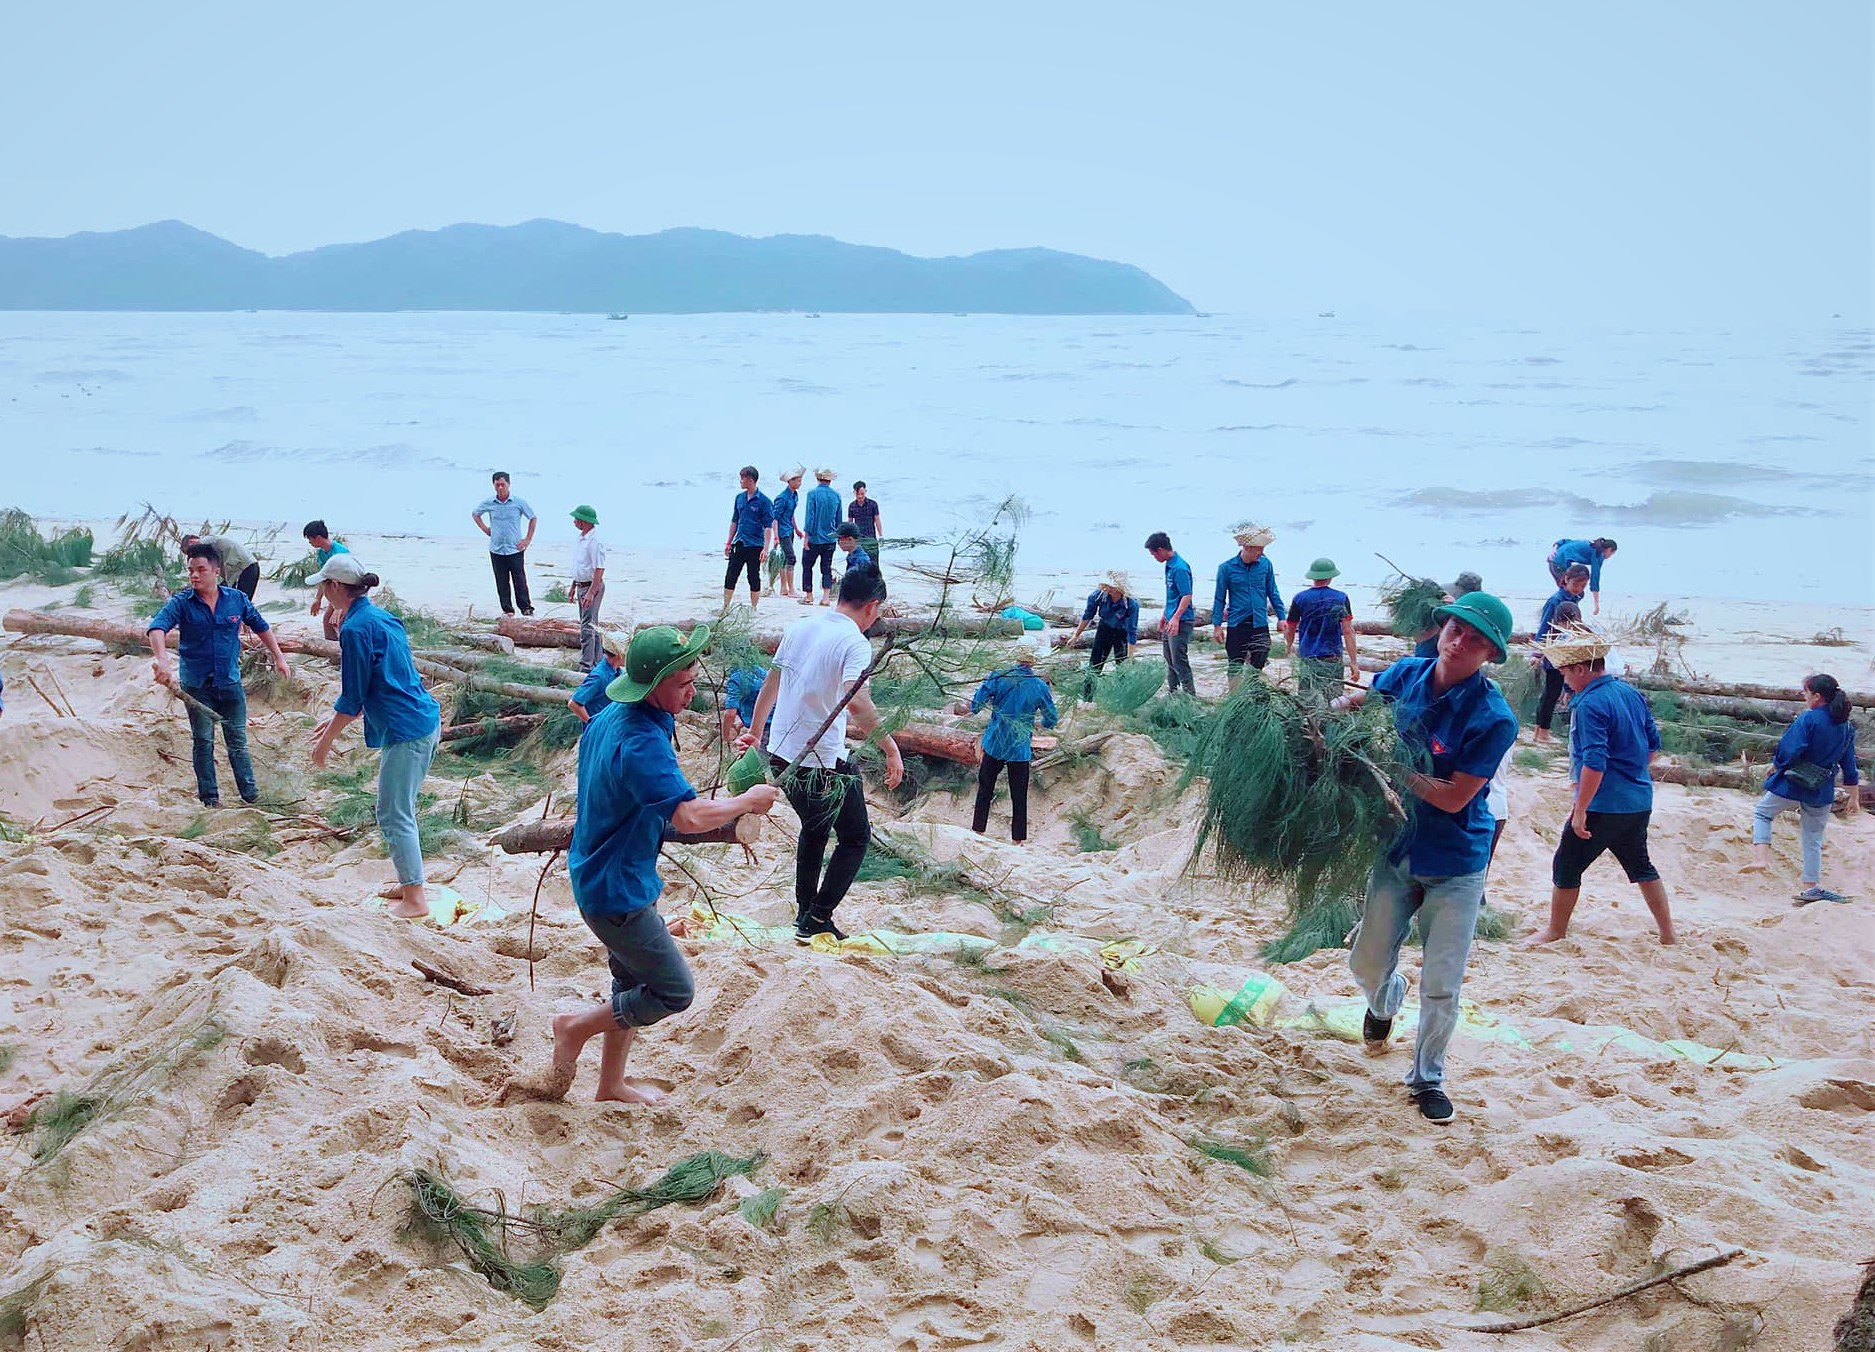 Huyện đoàn Hải Hà đã huy động 100 công giúp đỡ xã Cái Chiên trồng trên 1km đường hoa tại thôn Đầu Rồng.